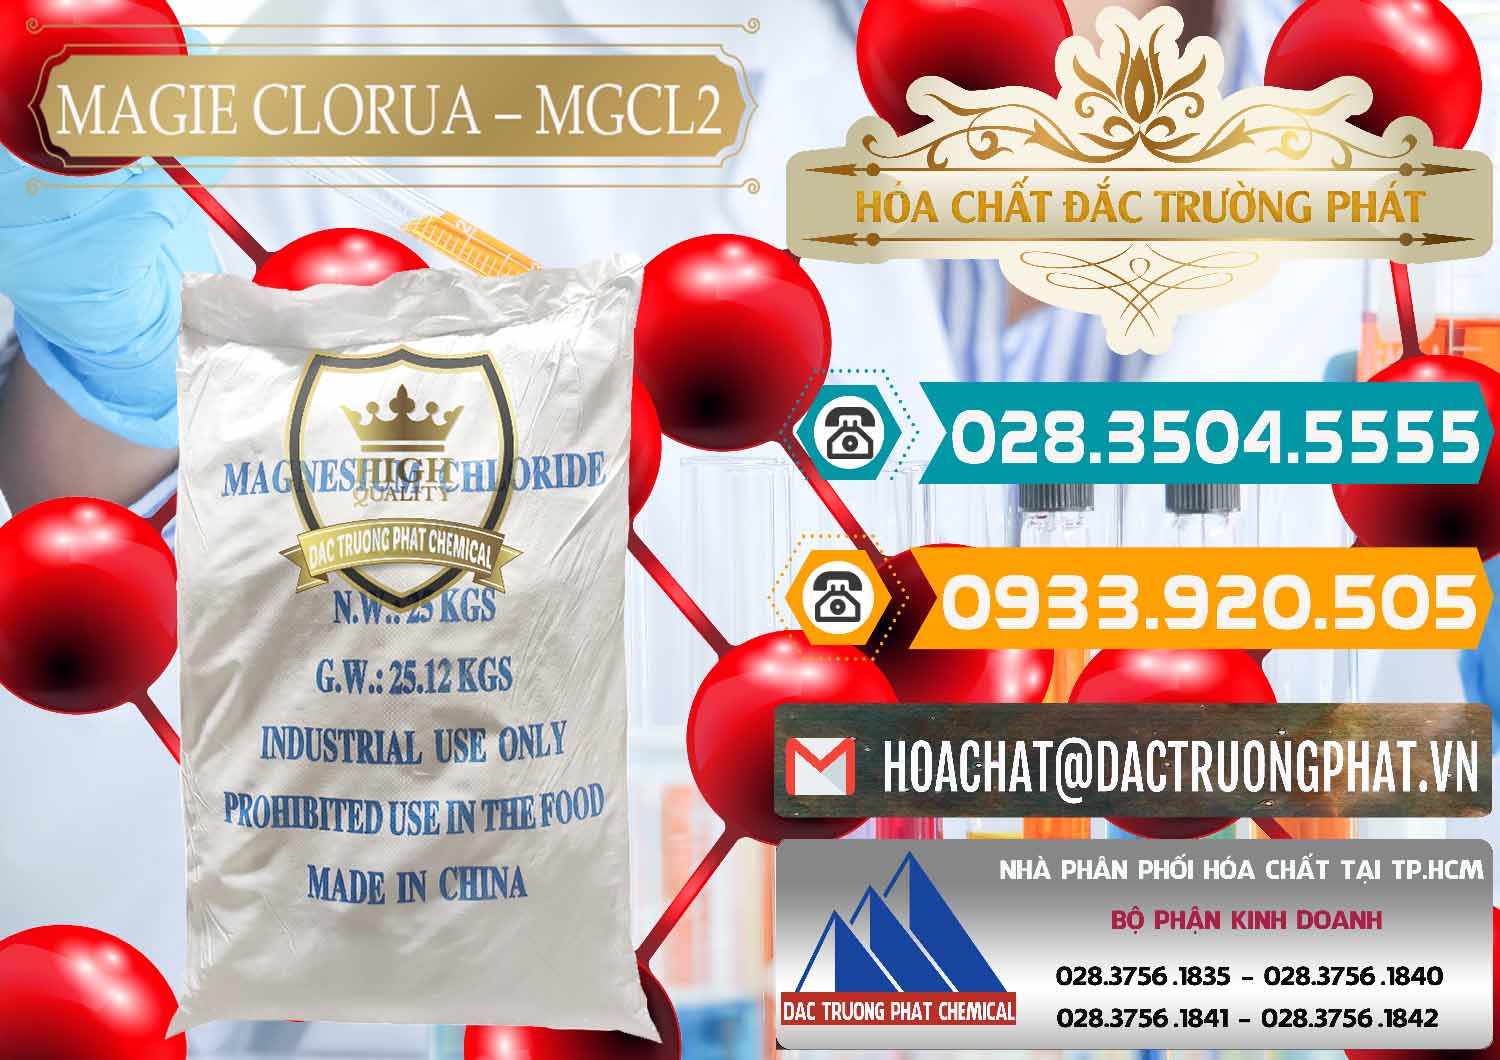 Cty chuyên cung cấp & bán Magie Clorua – MGCL2 96% Dạng Vảy Trung Quốc China - 0091 - Công ty chuyên cung cấp và kinh doanh hóa chất tại TP.HCM - congtyhoachat.vn